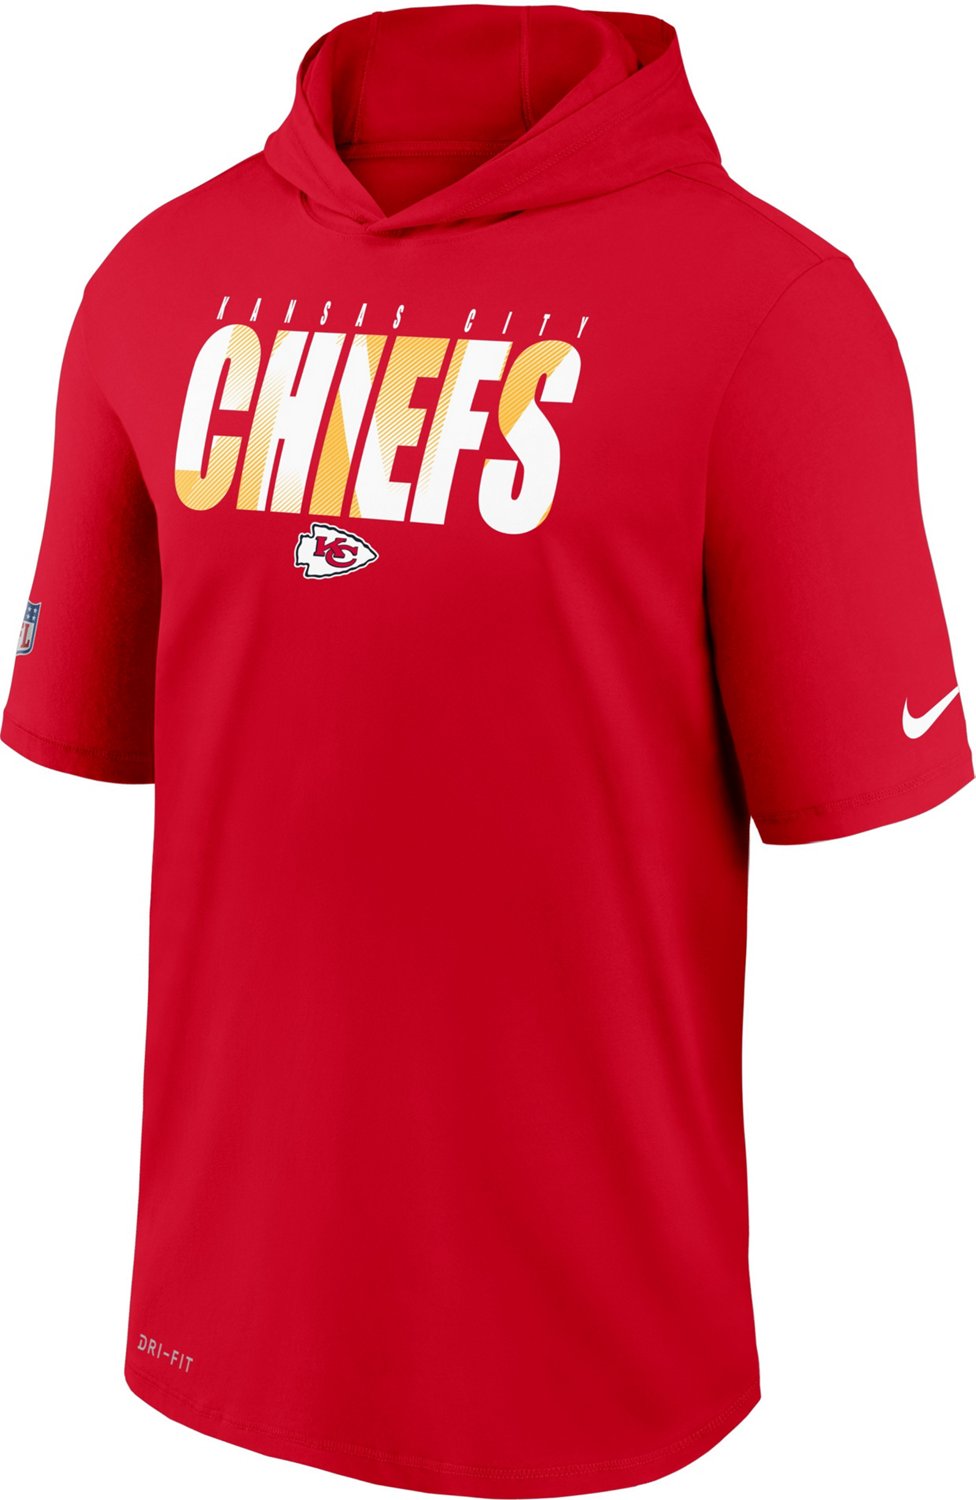 chiefs nike shirt